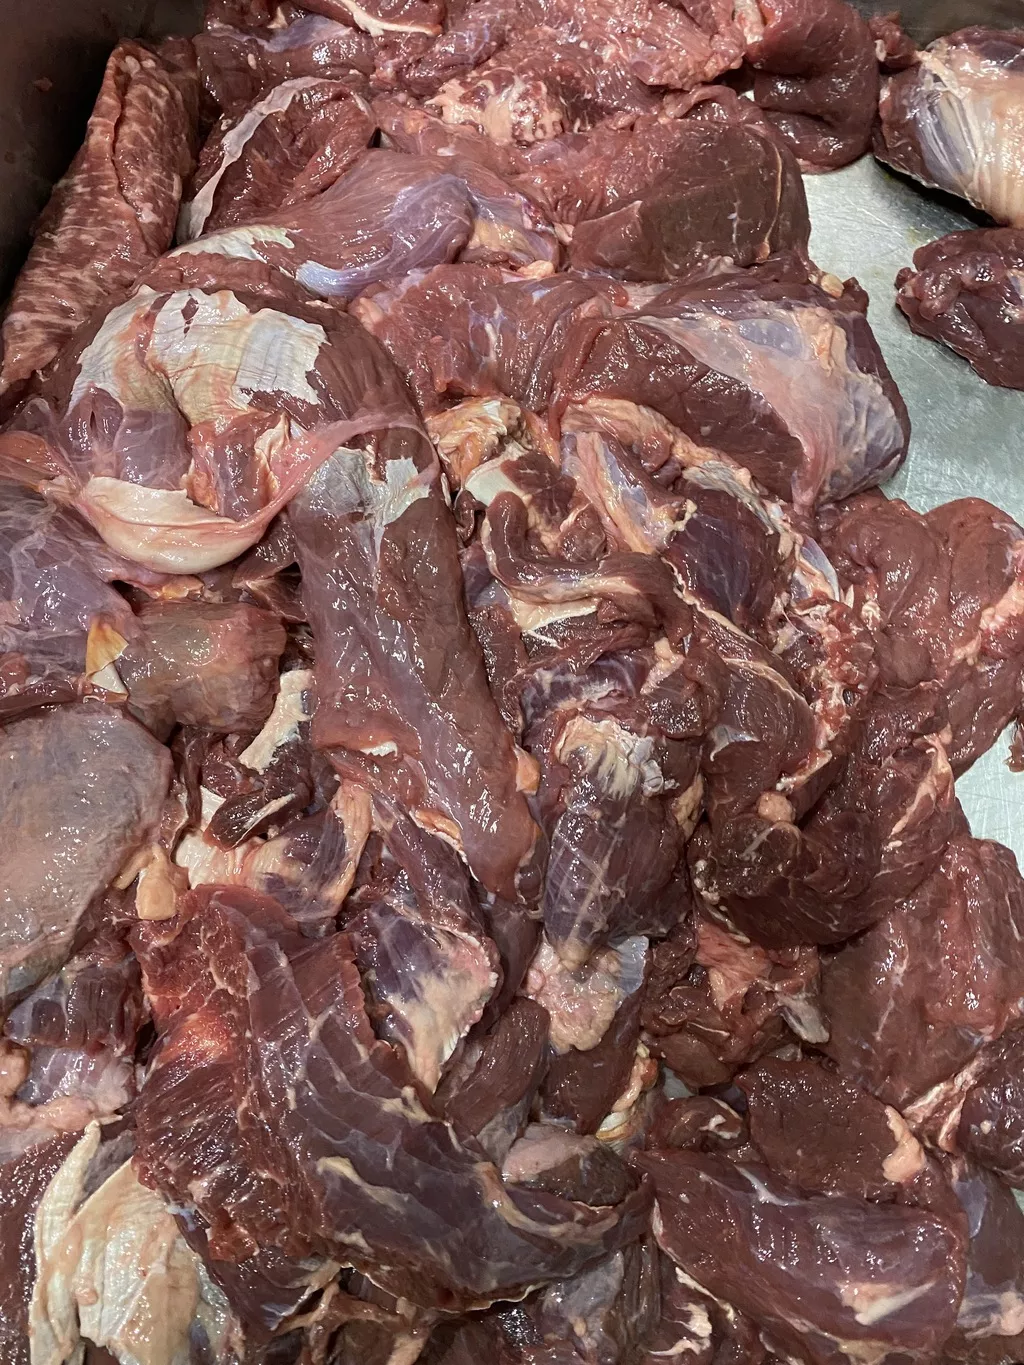 мясо говядины, телятины в Самаре и Самарской области 2